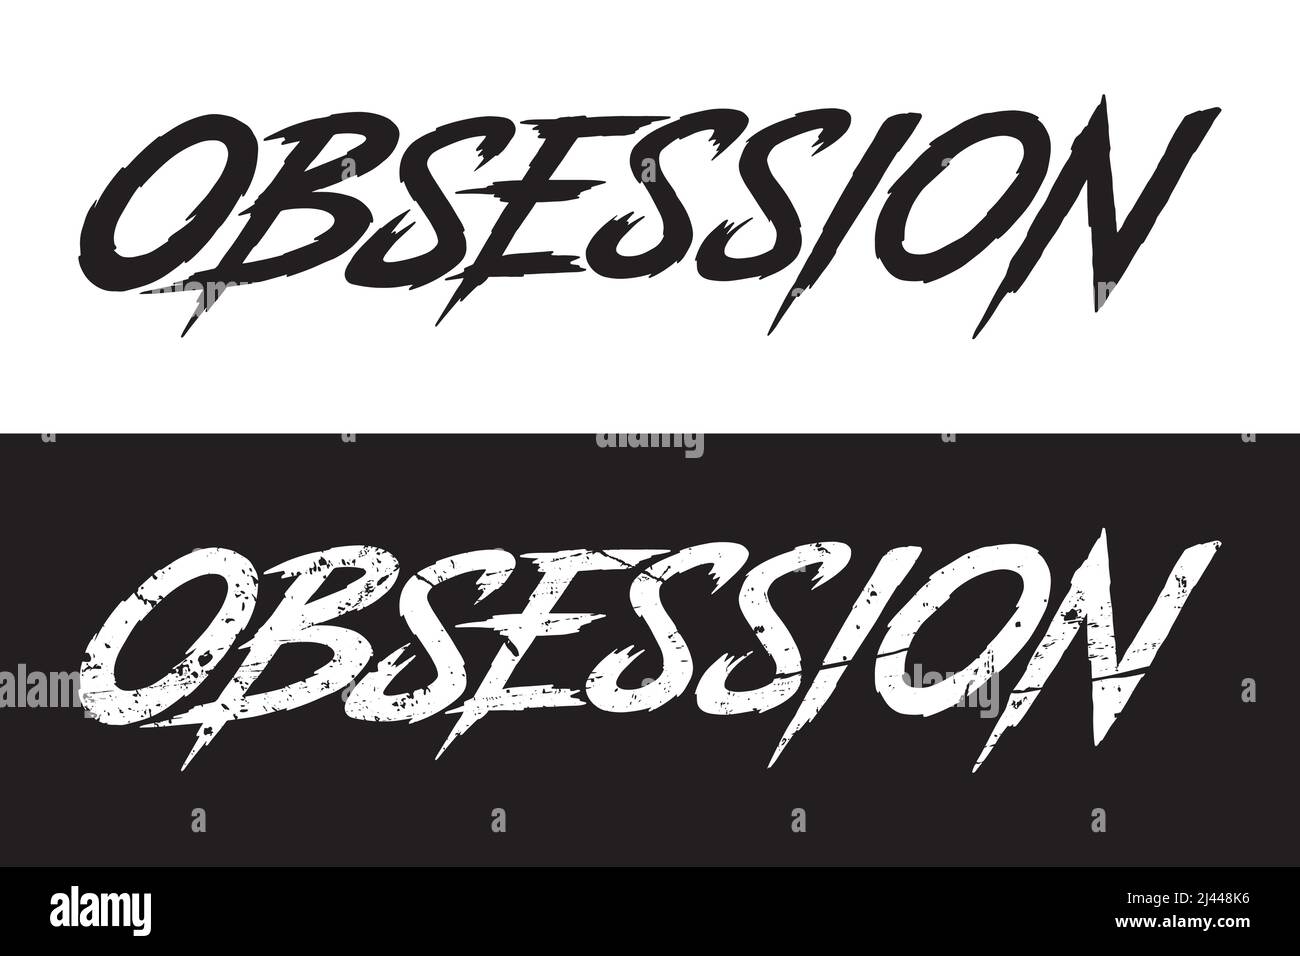 Obsession. Typography logo design emblem.  Digital hand lettering logo illustration. Stock Vector